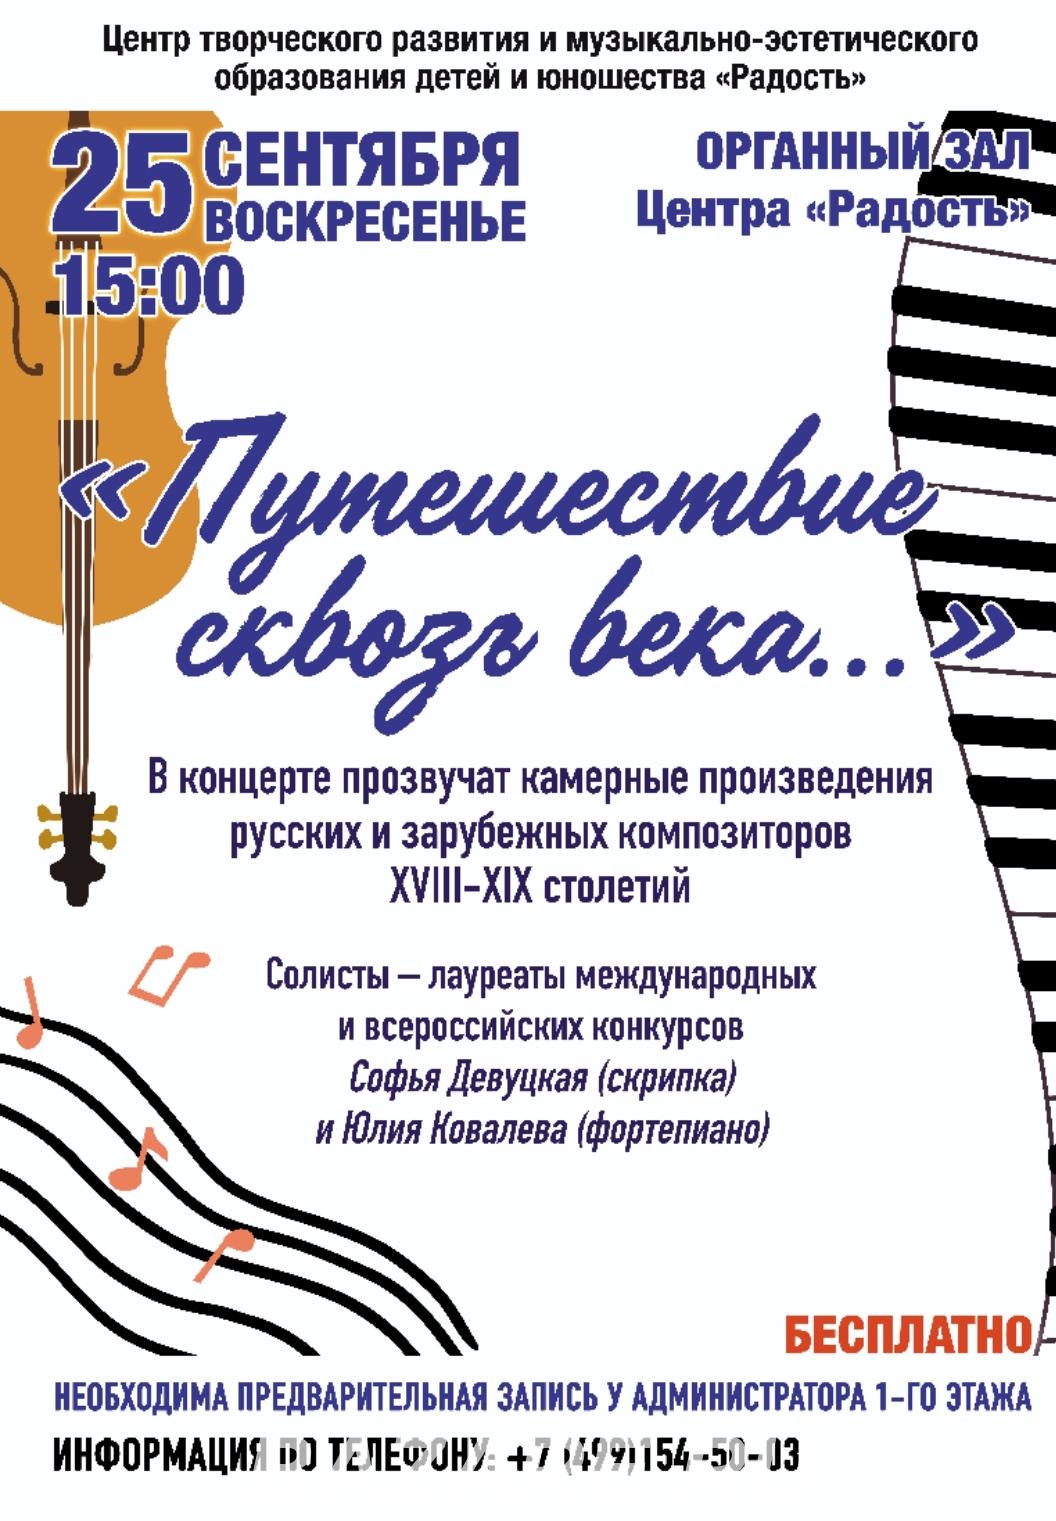 Центр Радость приглашает учащихся, Москва м. Войковская